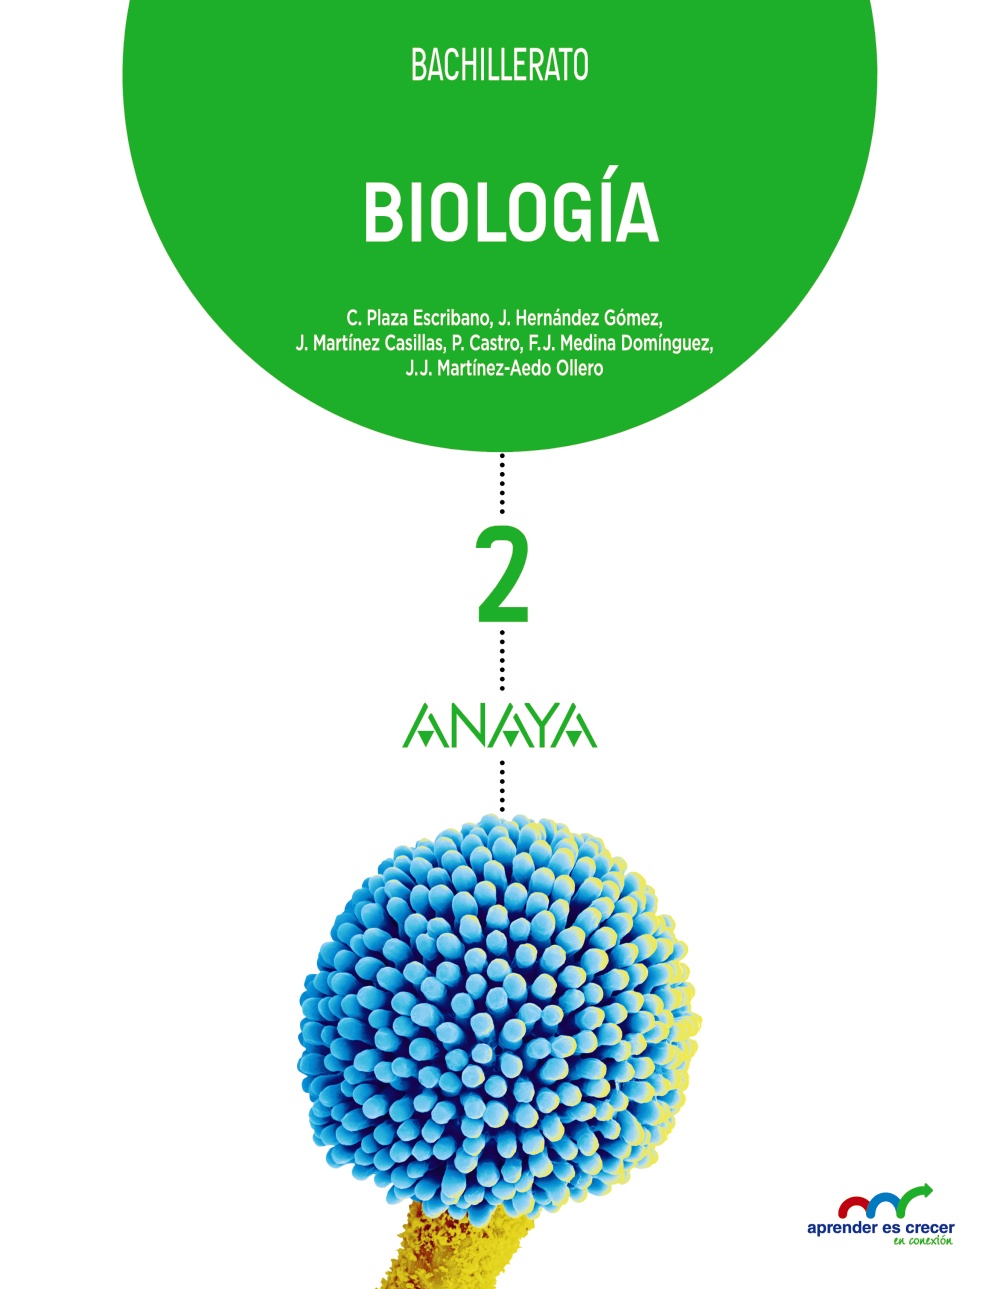 Solucionario Biologia 2 Bachillerato Anaya Aprender es Crecer PDF Ejercicios Resueltos-pdf